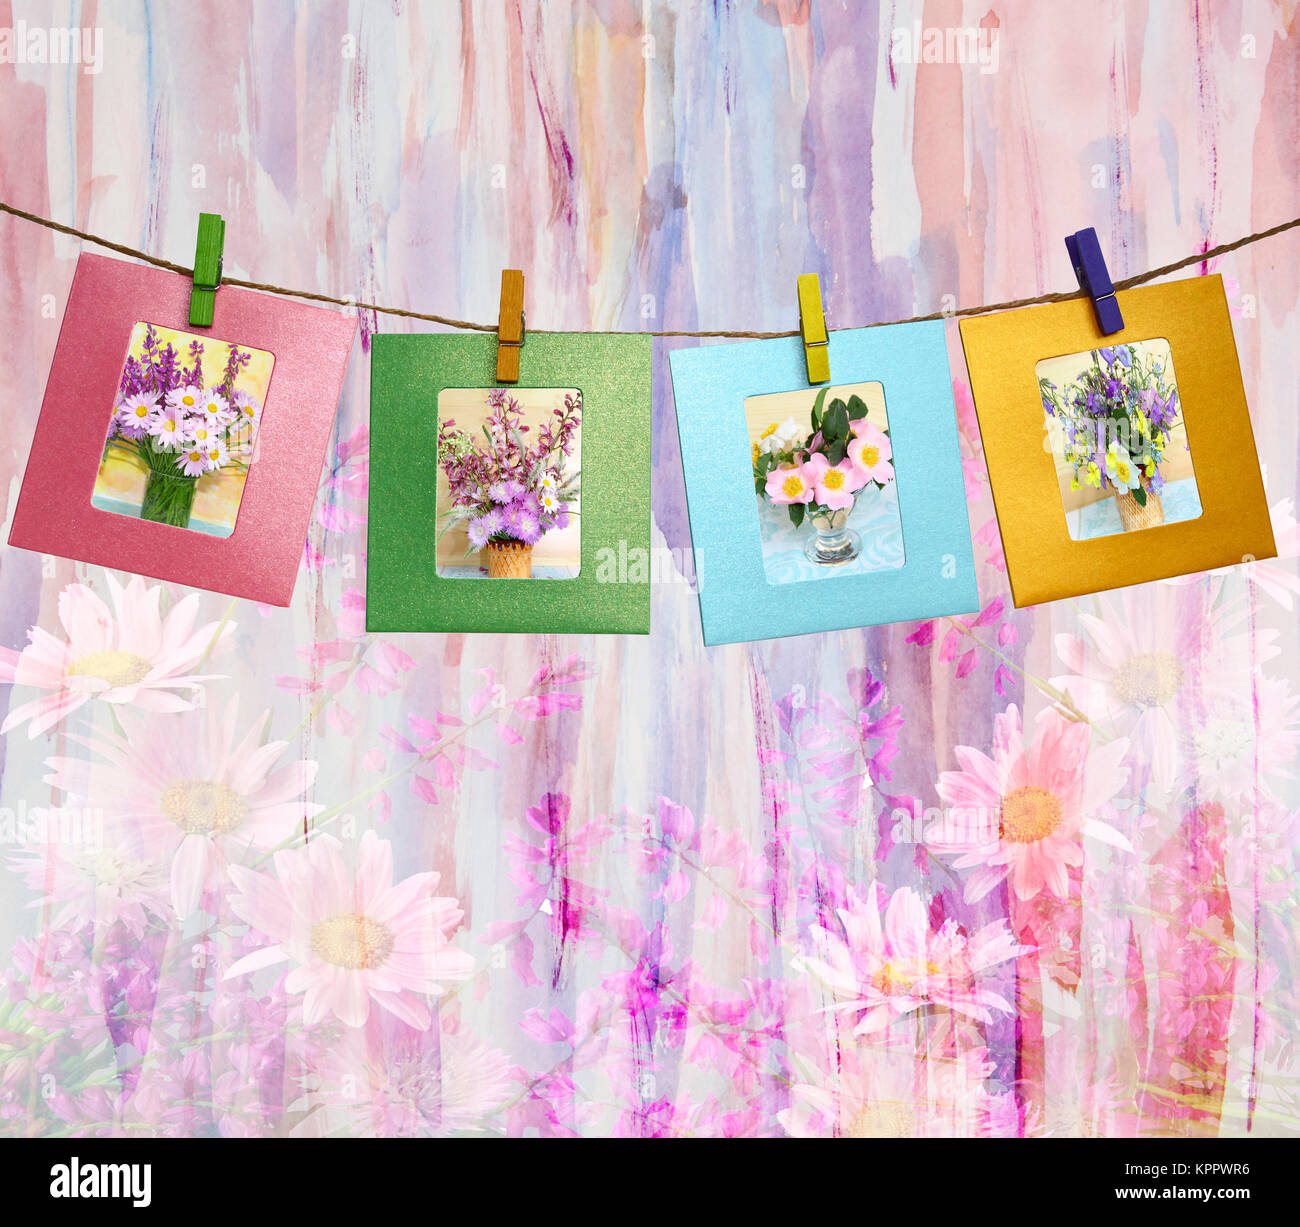 De belles photos de bouquets de fleurs à l'intérieur d'une des pinces à linge sur un arrière-plan aquarelle abstraite Banque D'Images